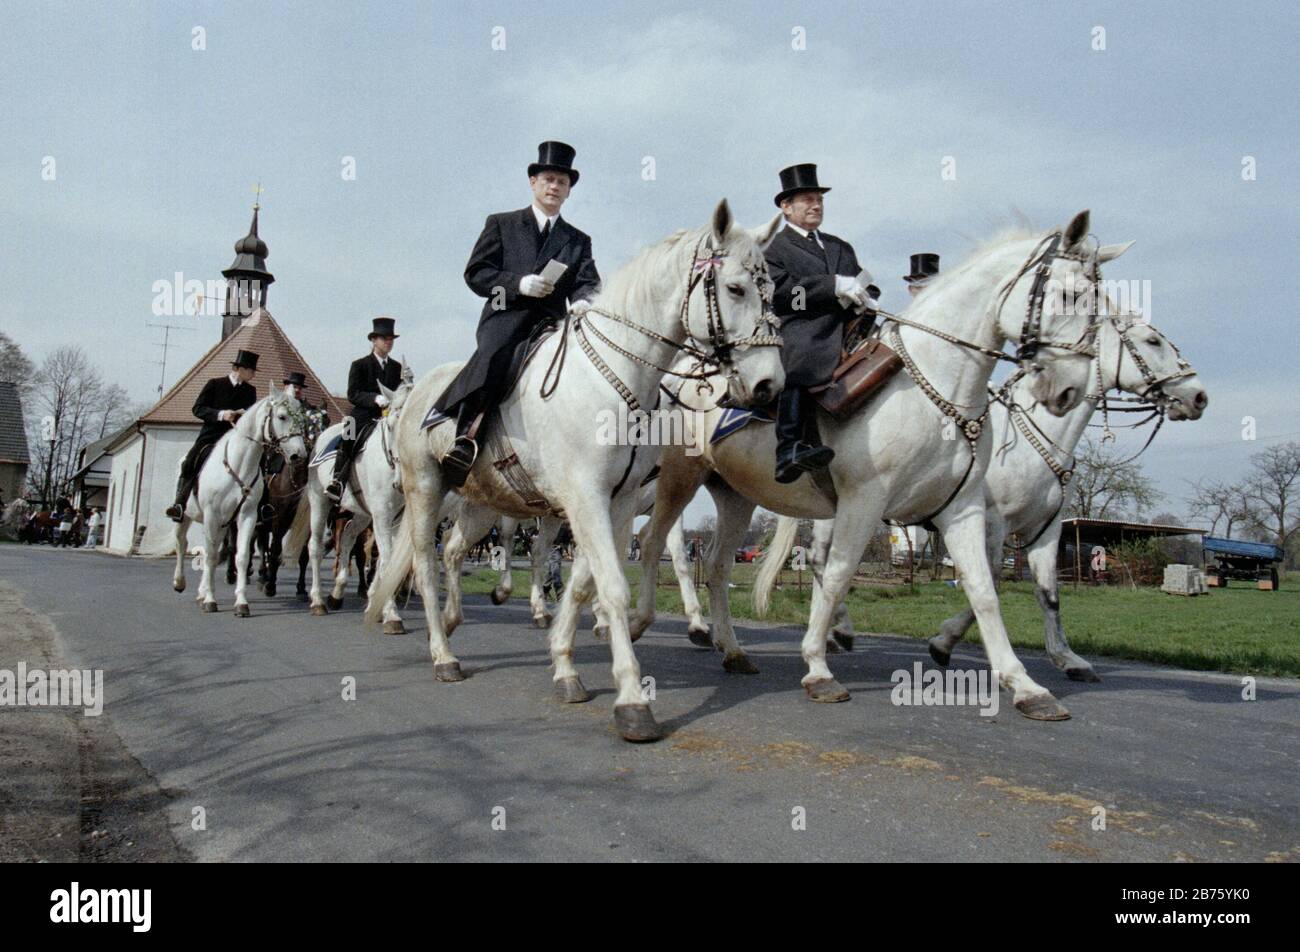 Sorbische Osterfahrer fahren am Ostersonntag in Wittichenau mit ihren Pferden, am 30.03.1997 [automatisierte Übersetzung] Stockfoto